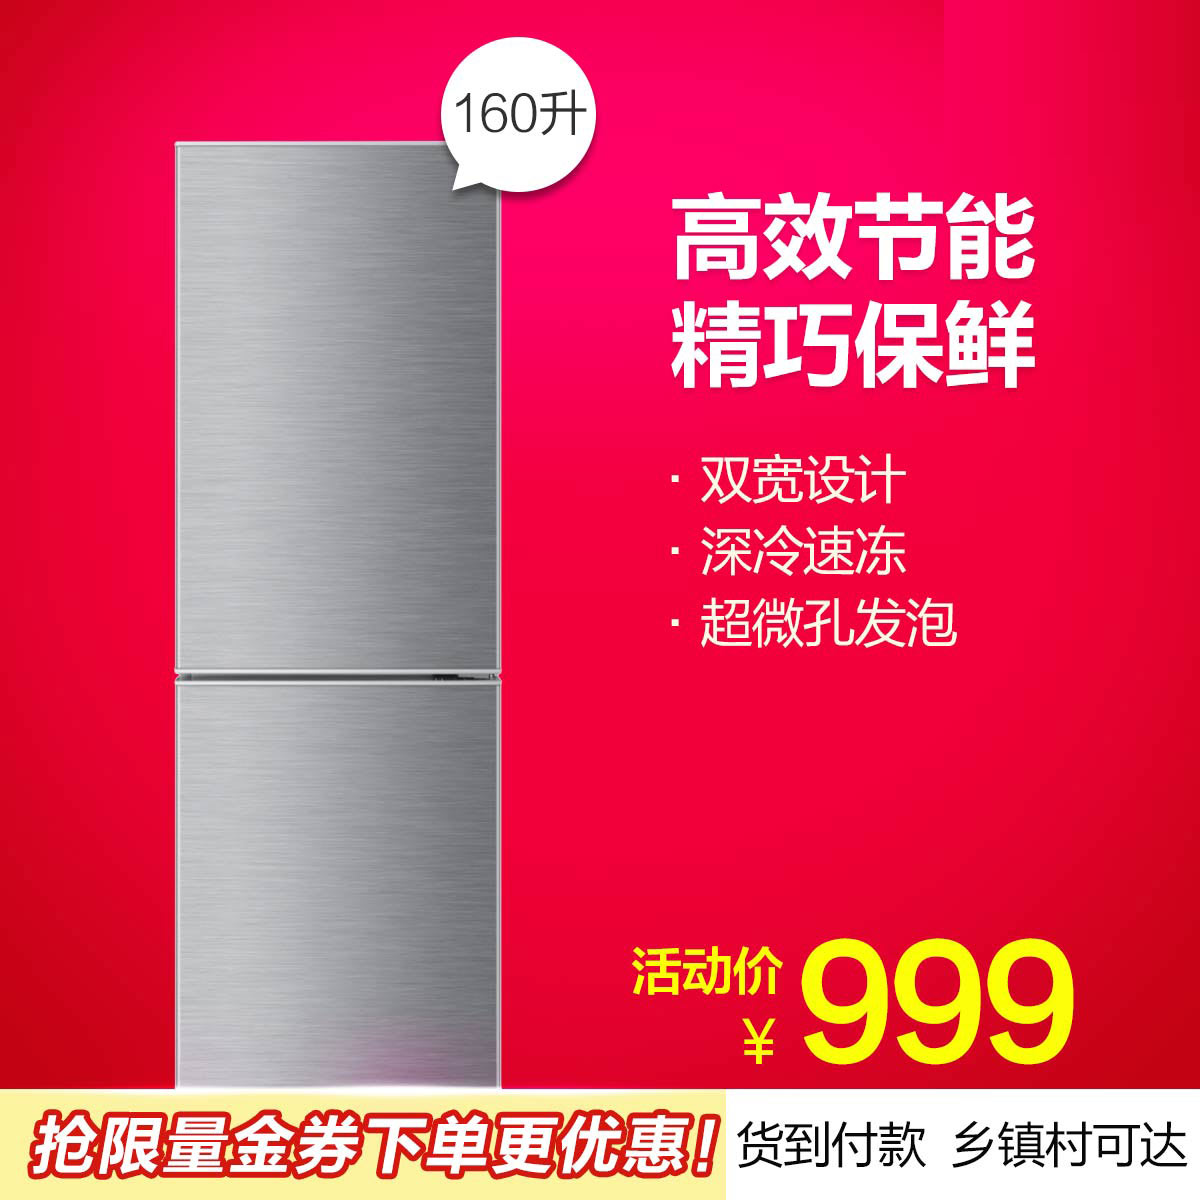 正品[海尔冰箱225scm]海尔冰箱评测 海尔冰箱